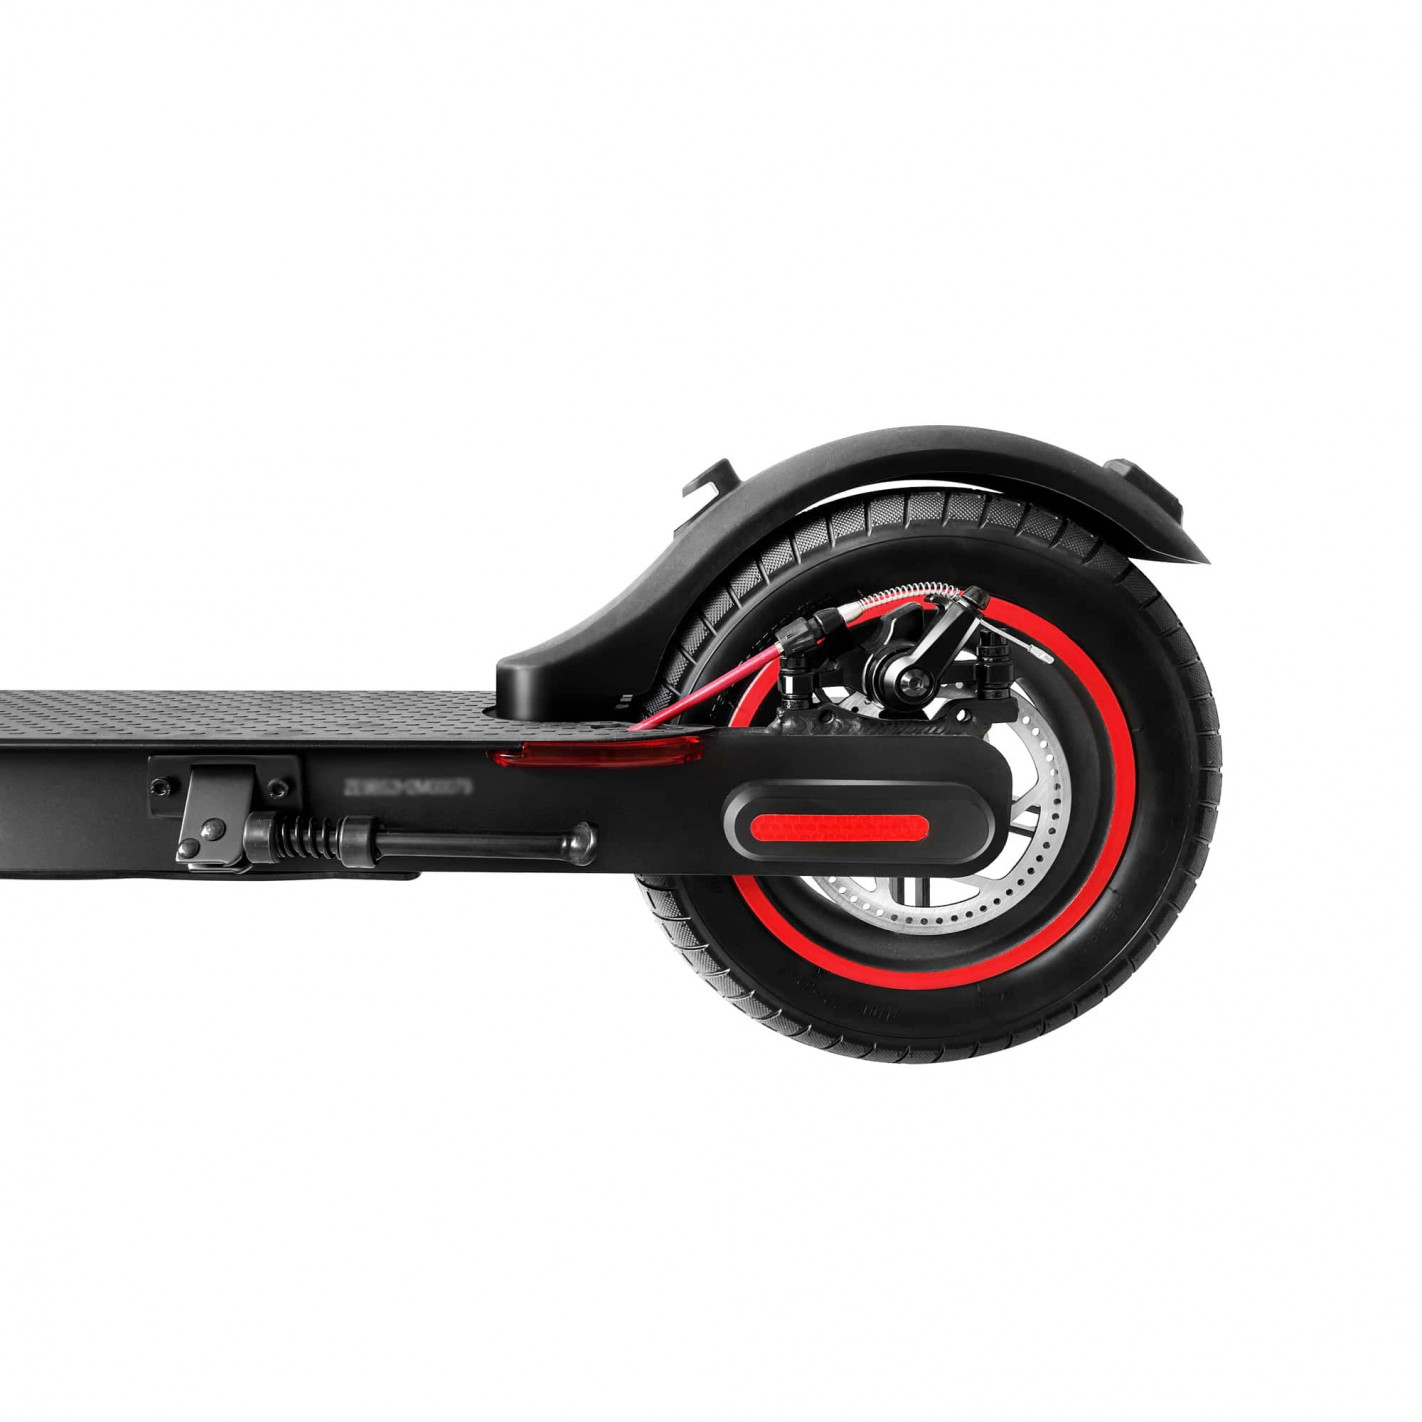 Batería de litio para patinete eléctrico 48V 13Ah para modelos skate flash,  smartgyro, zwheel, cecotec. - Repuestos Plus